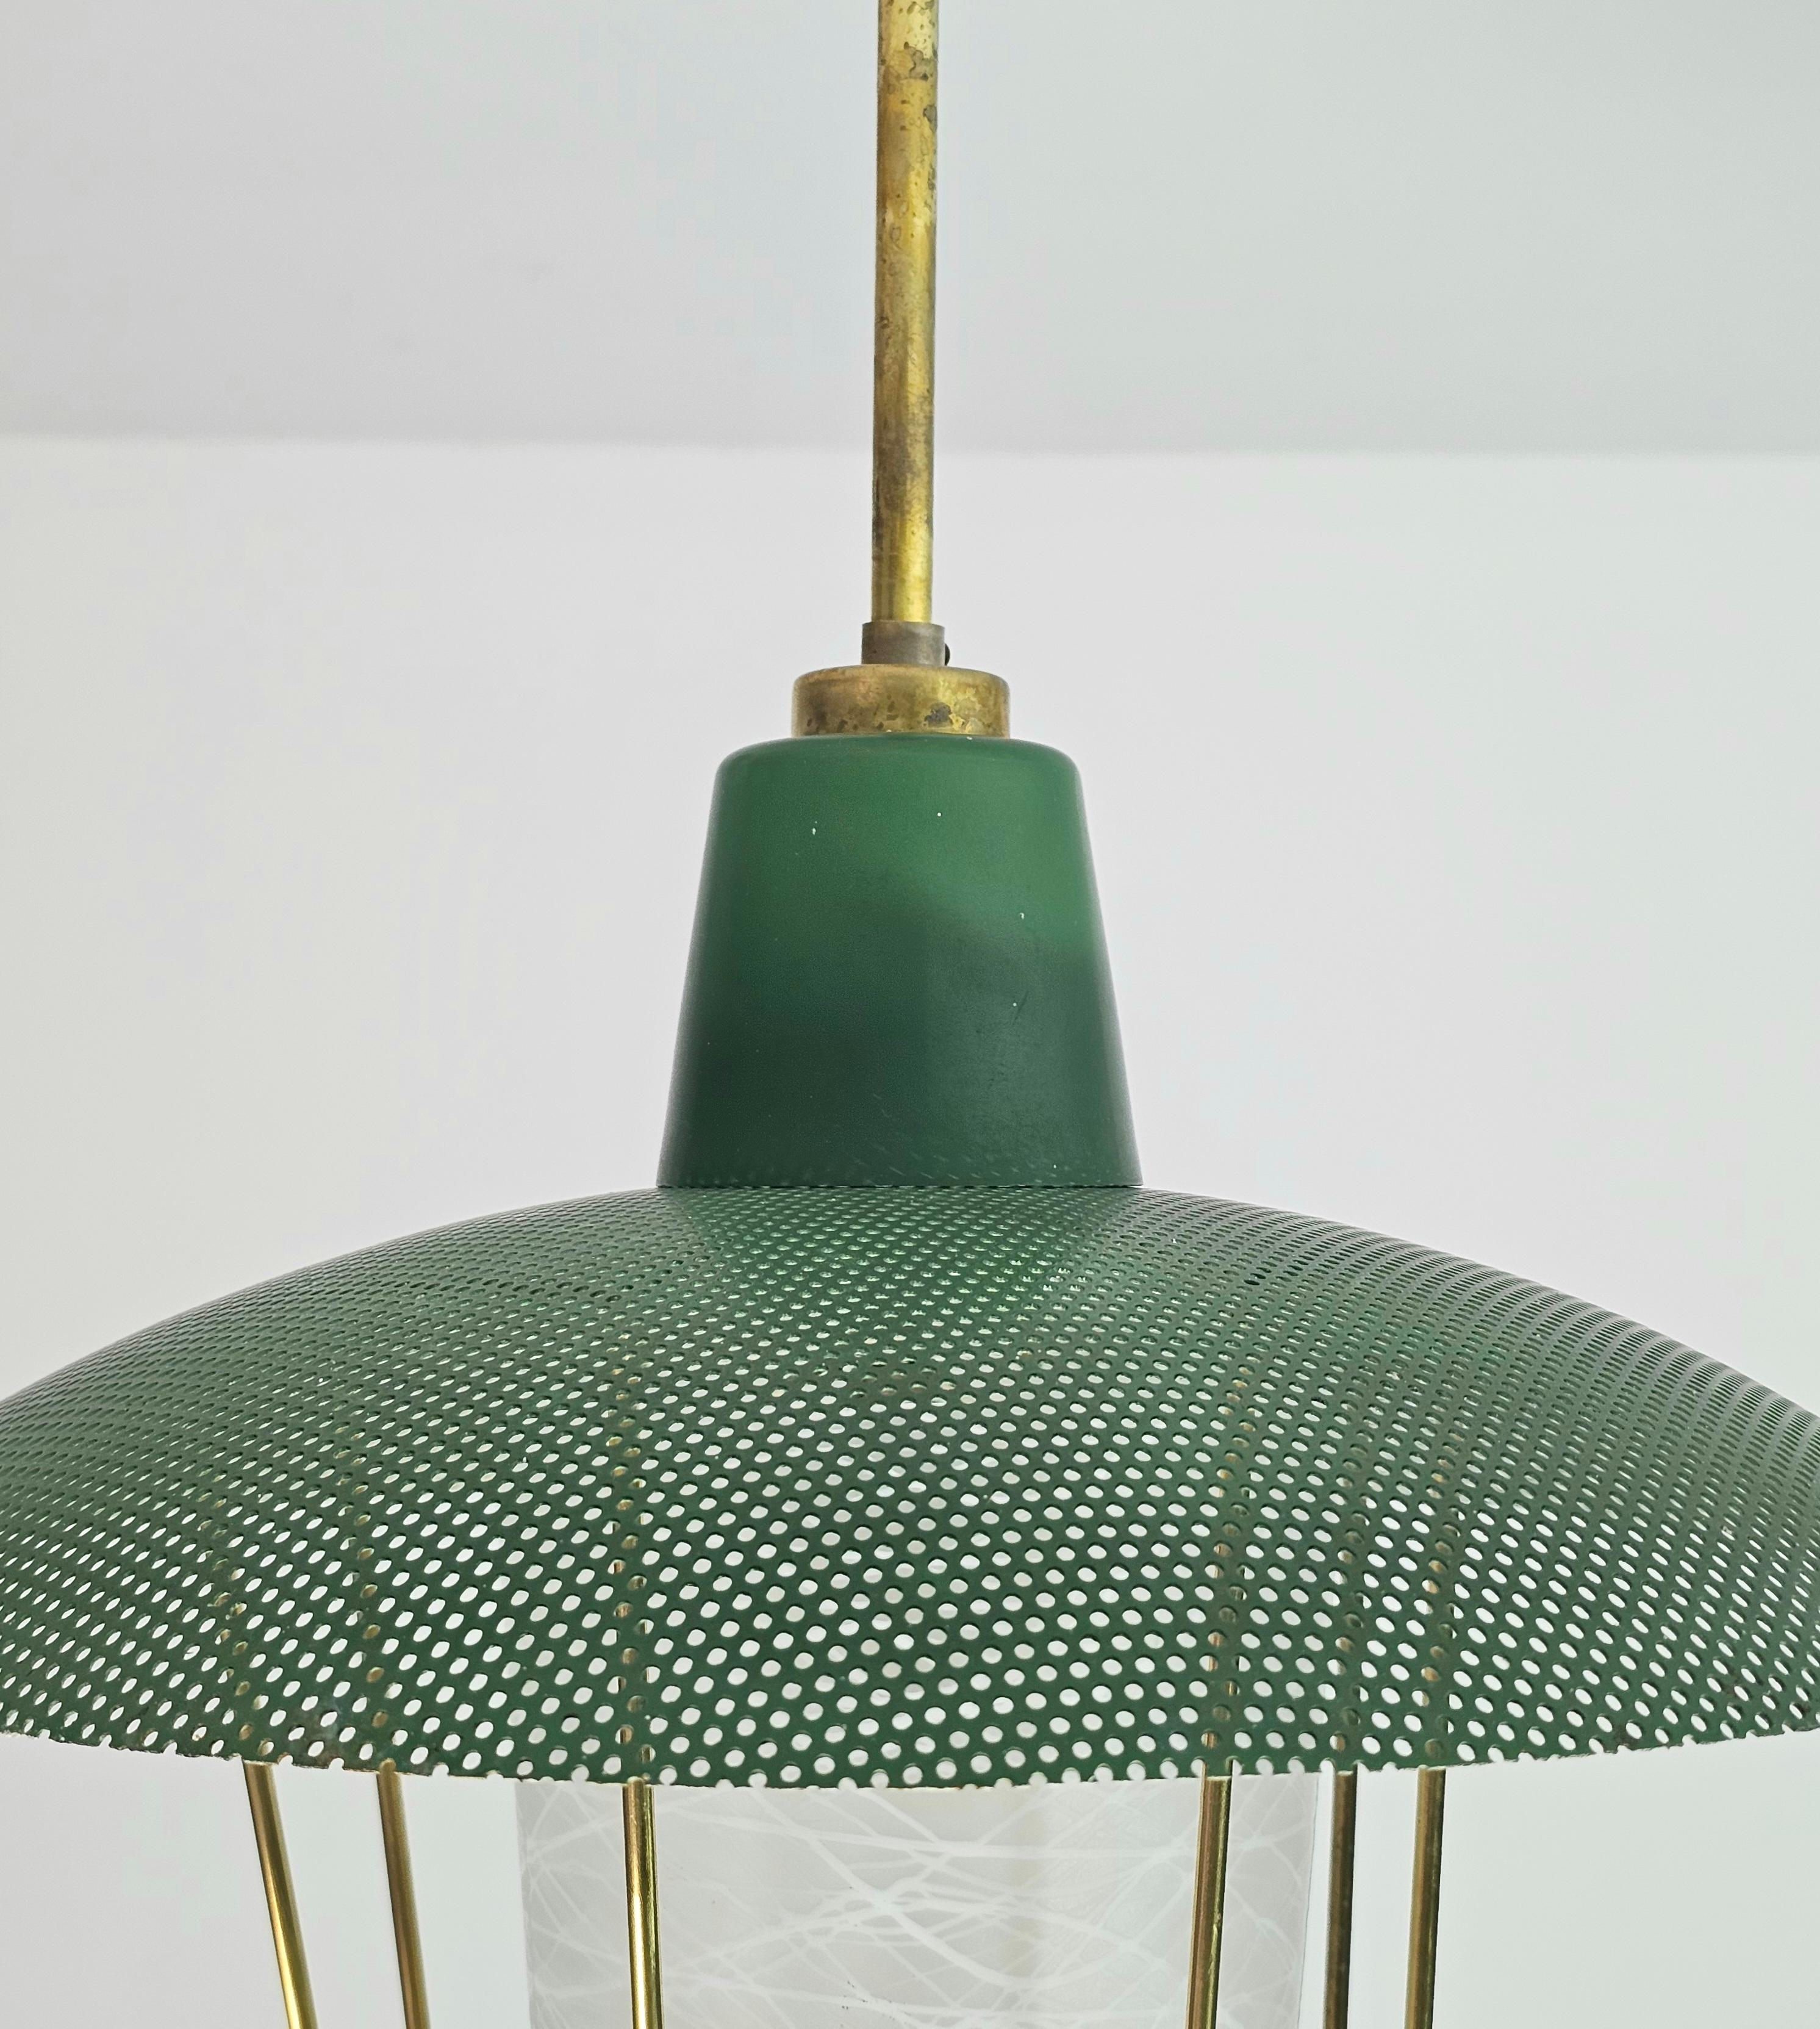 Pendant Chandelier Glass Brass Green Midcentury Modern Italian Design 1950s For Sale 5